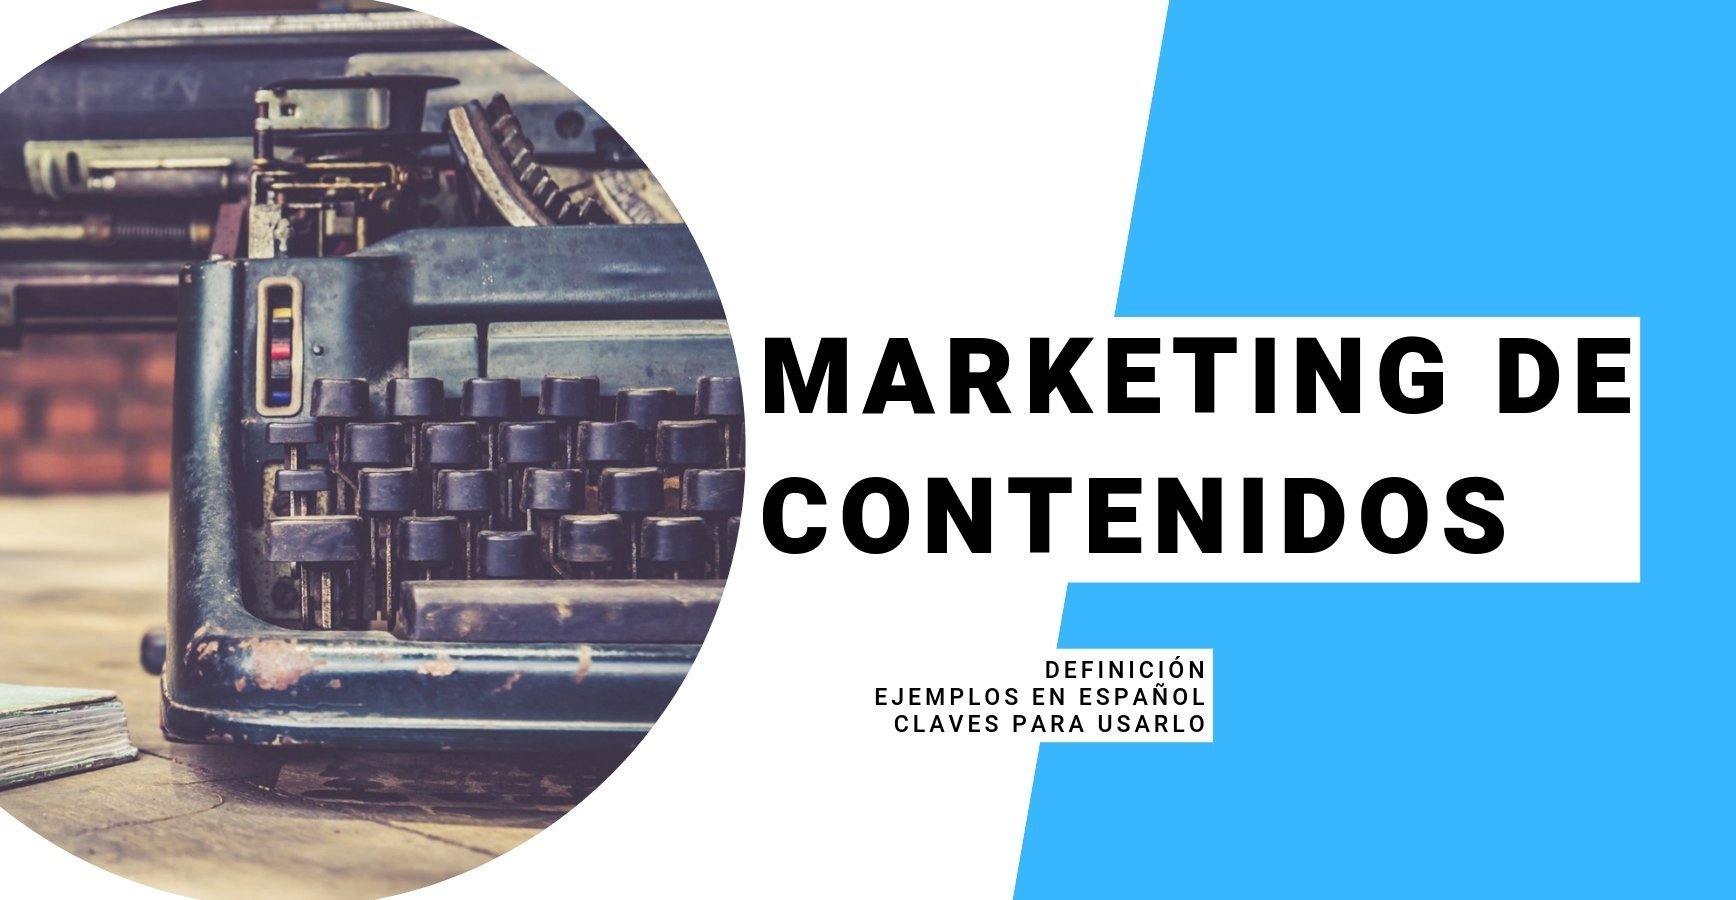 Marketing de Contenidos, qué es, ejemplos en español, claves para usarlo en 2019